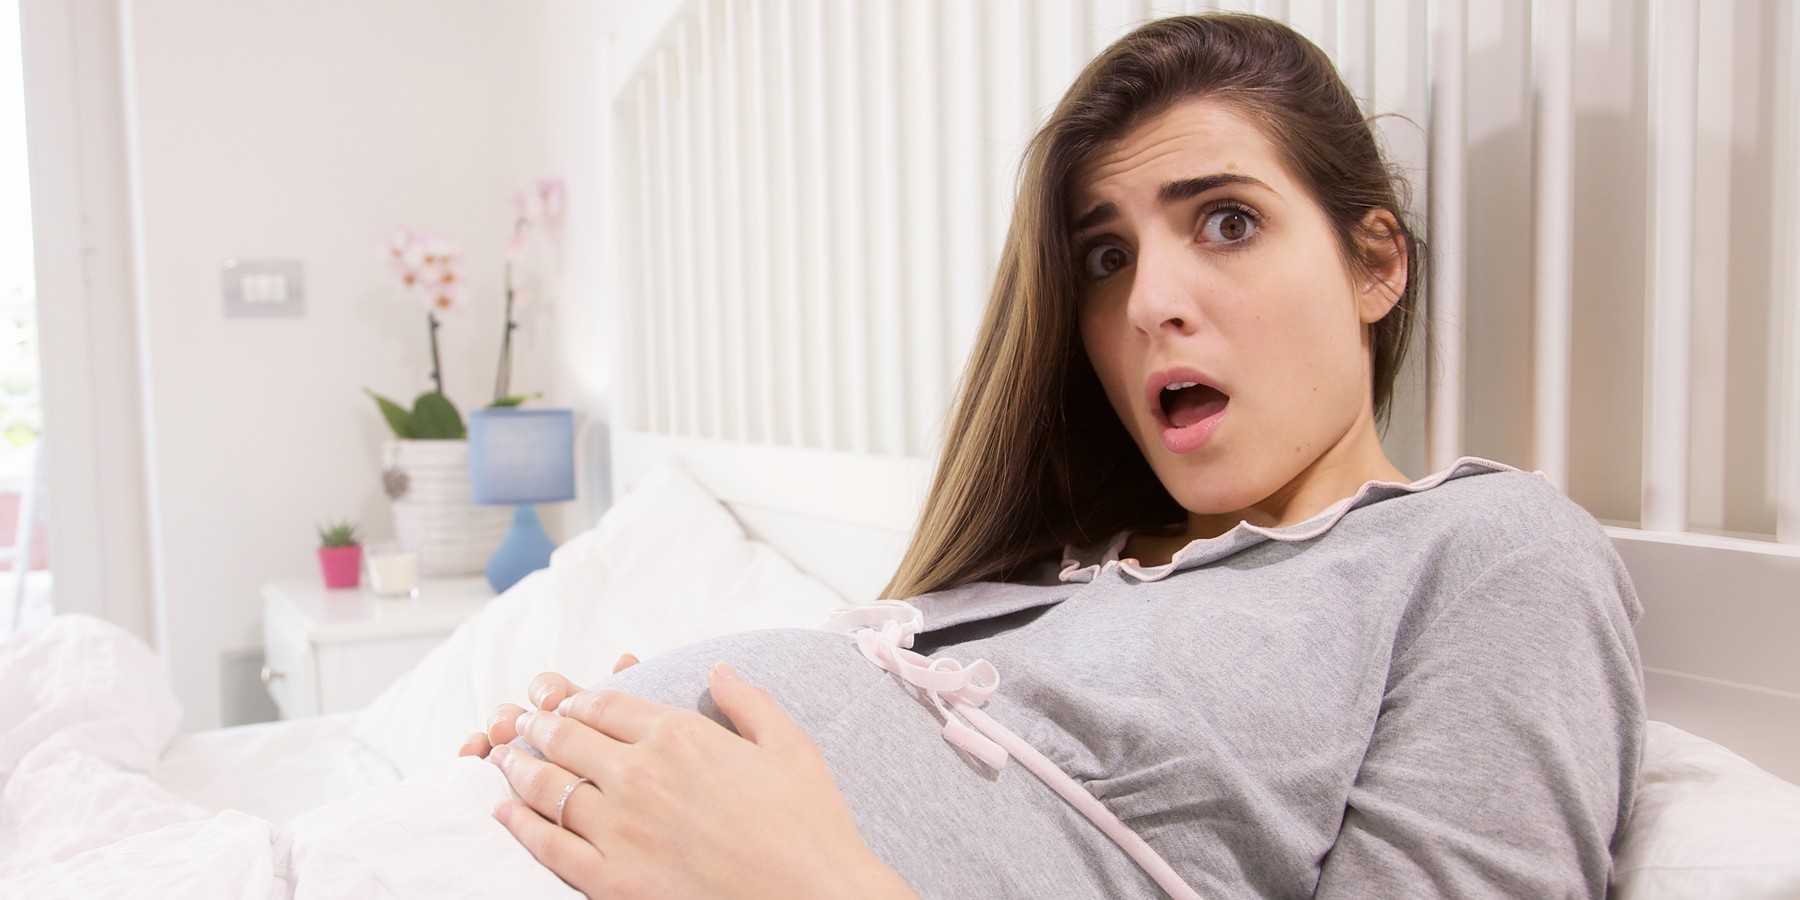 Сводная сестра испугалась беременности от брата